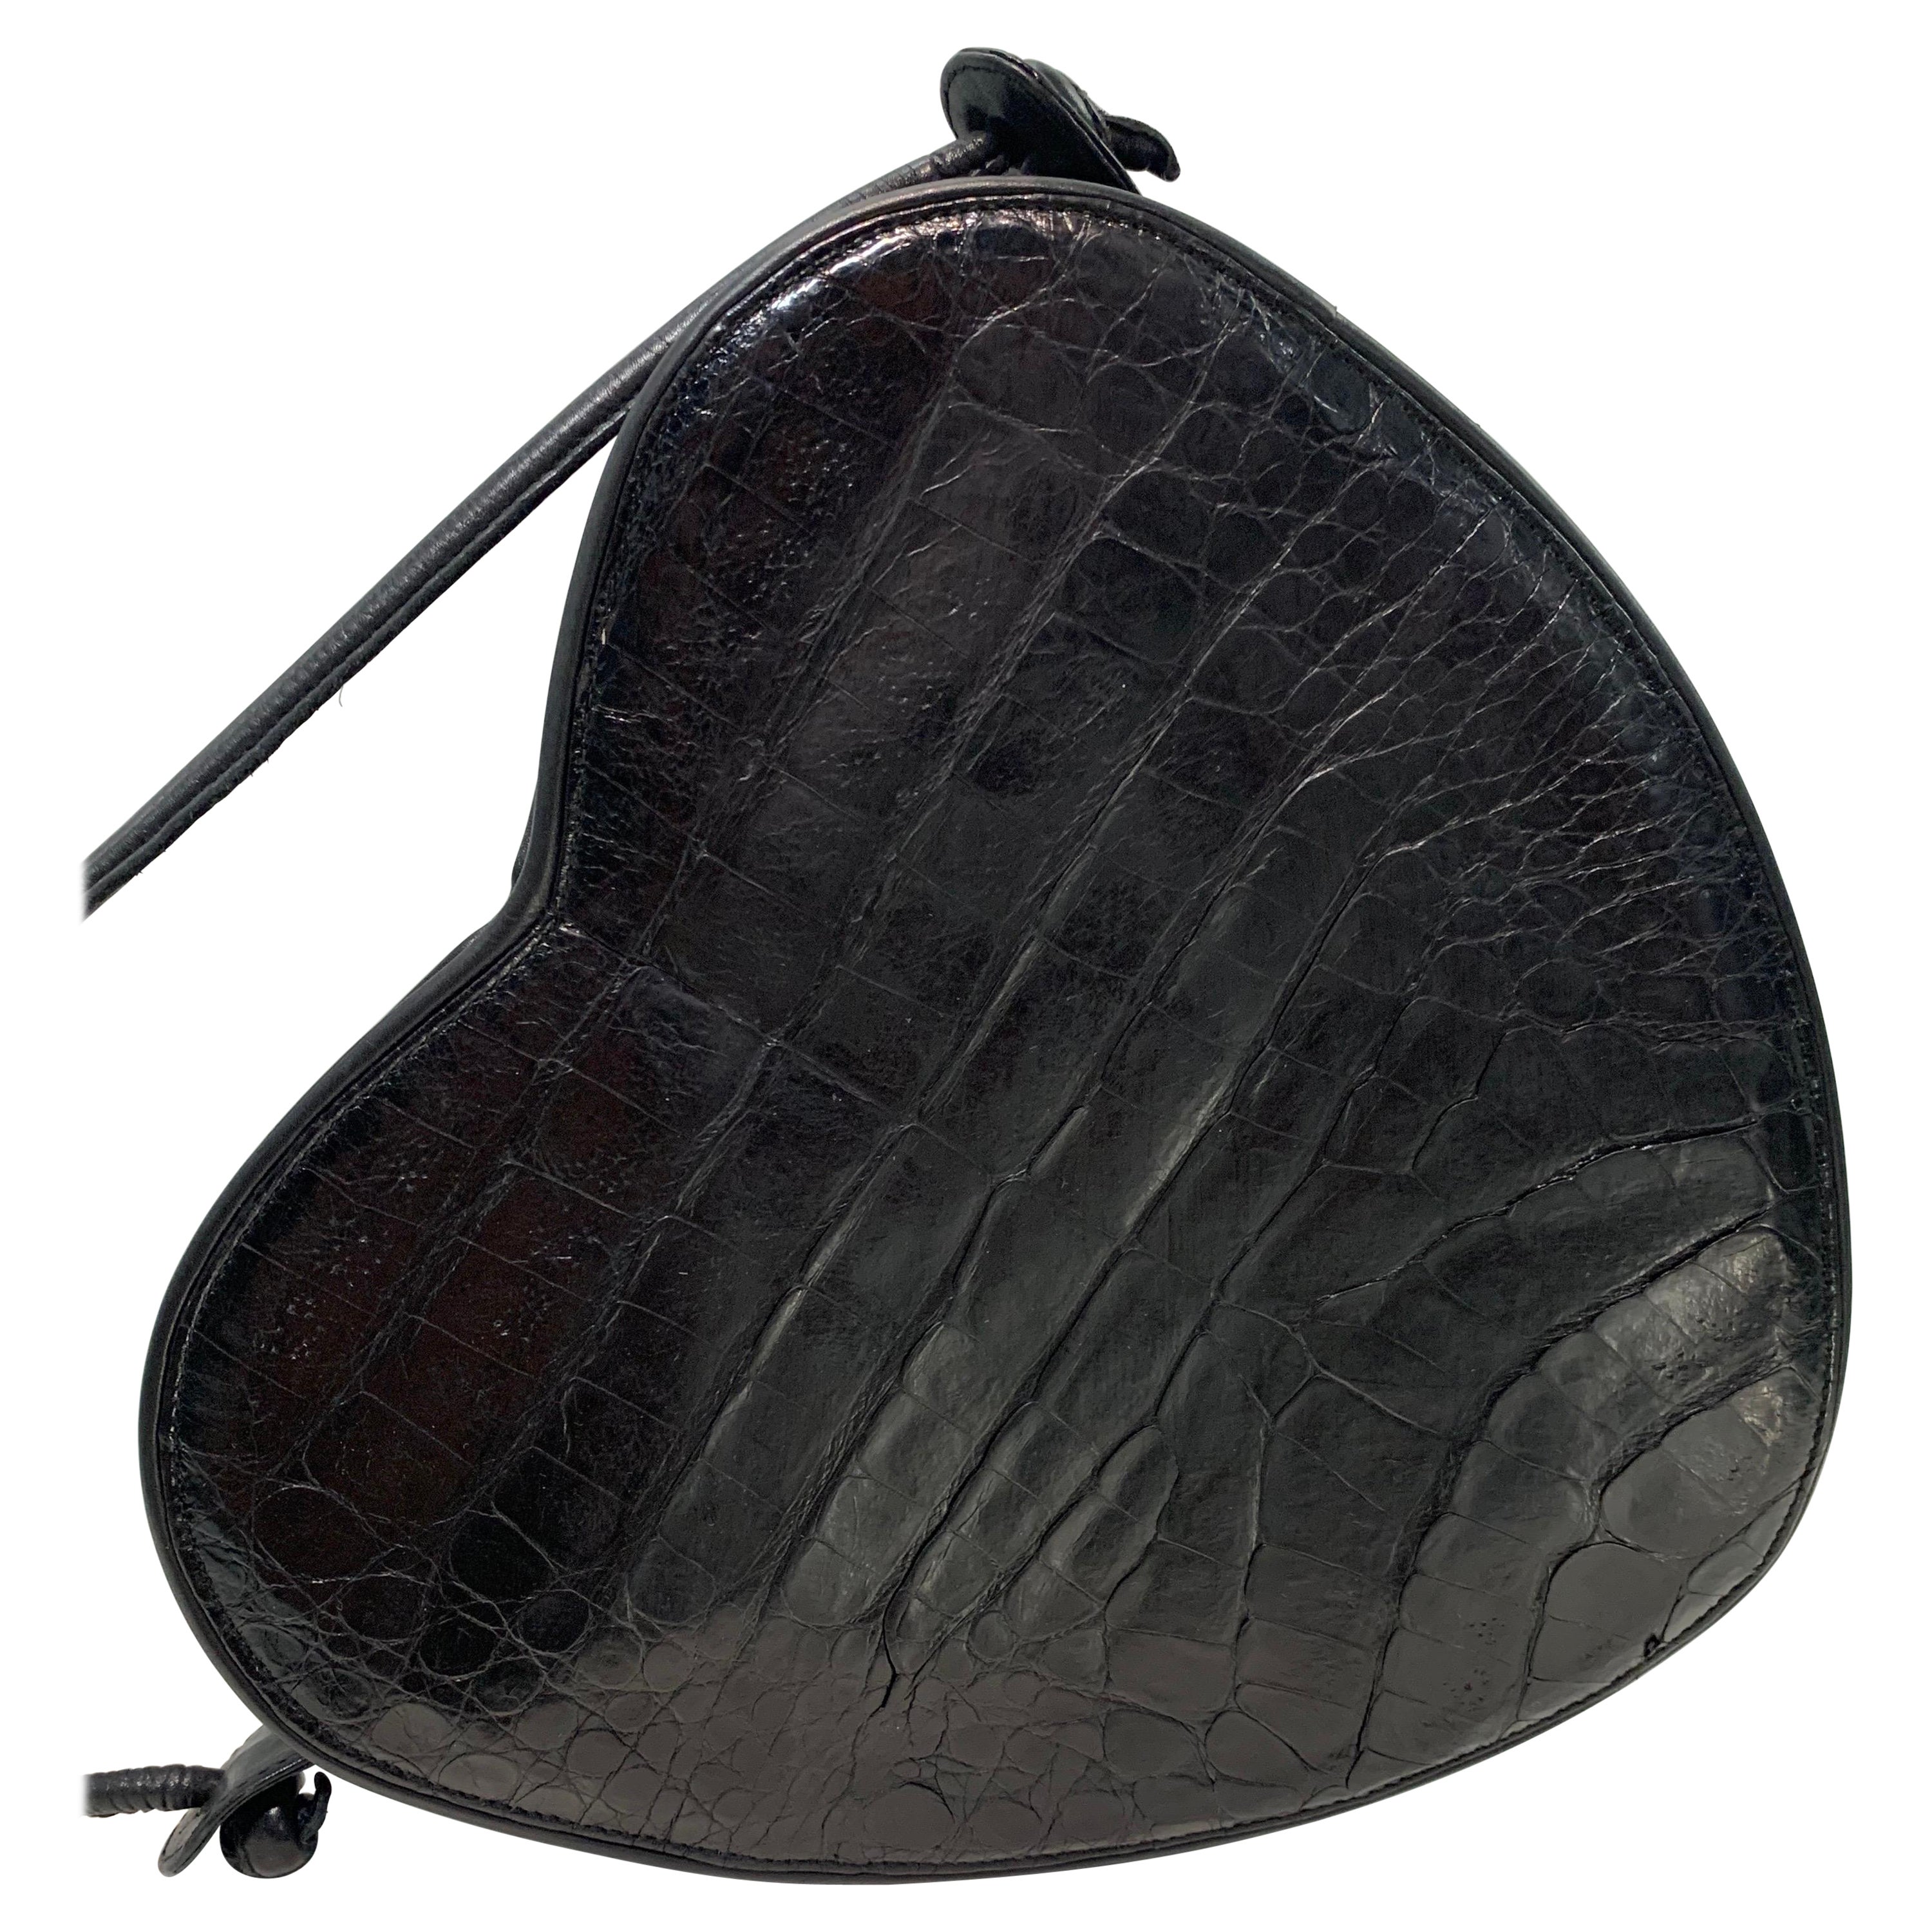 1980 I. Magnin Black Alligator Heart-Shaped Shoulder Bag w/ Leather Strap